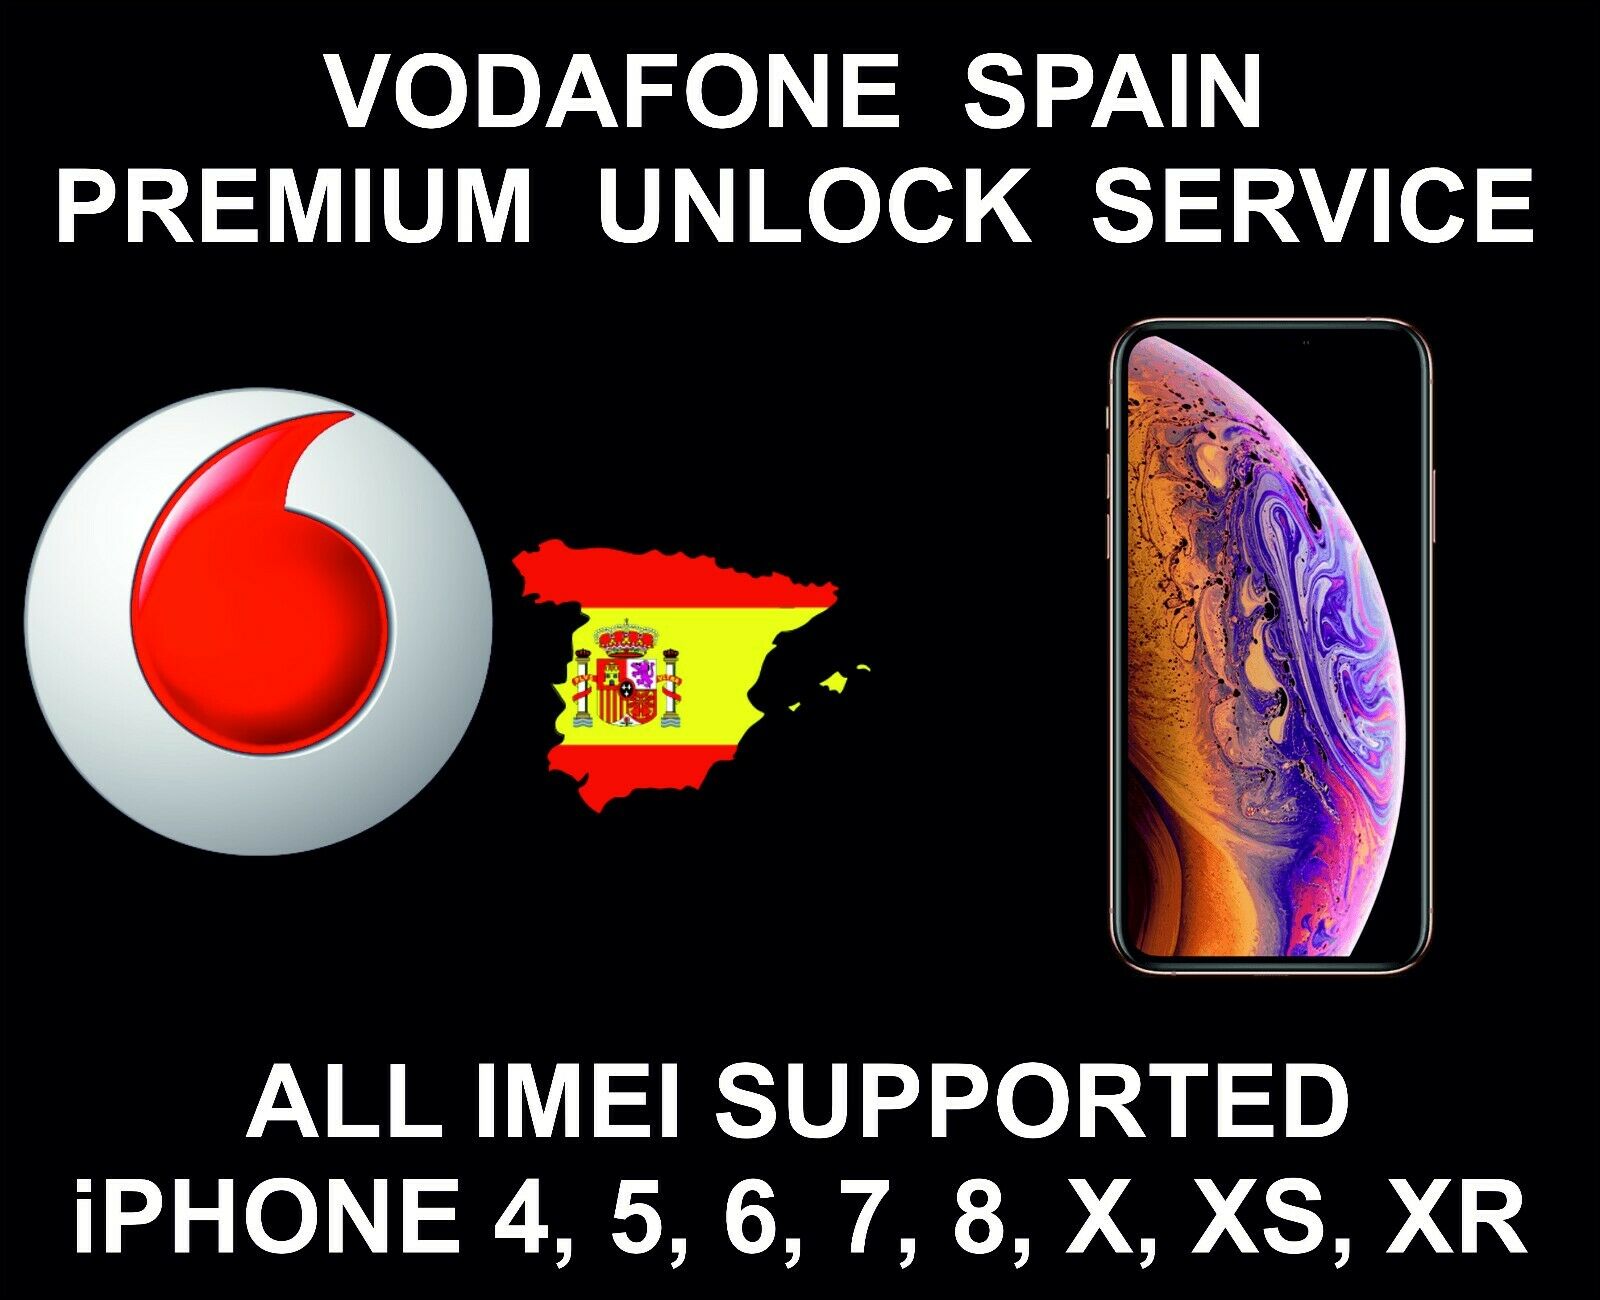 Vodafone Spain Premium Unlock Service, Fits Iphone 4, 5, 6, 7, 8 X, Xr Xs, Max